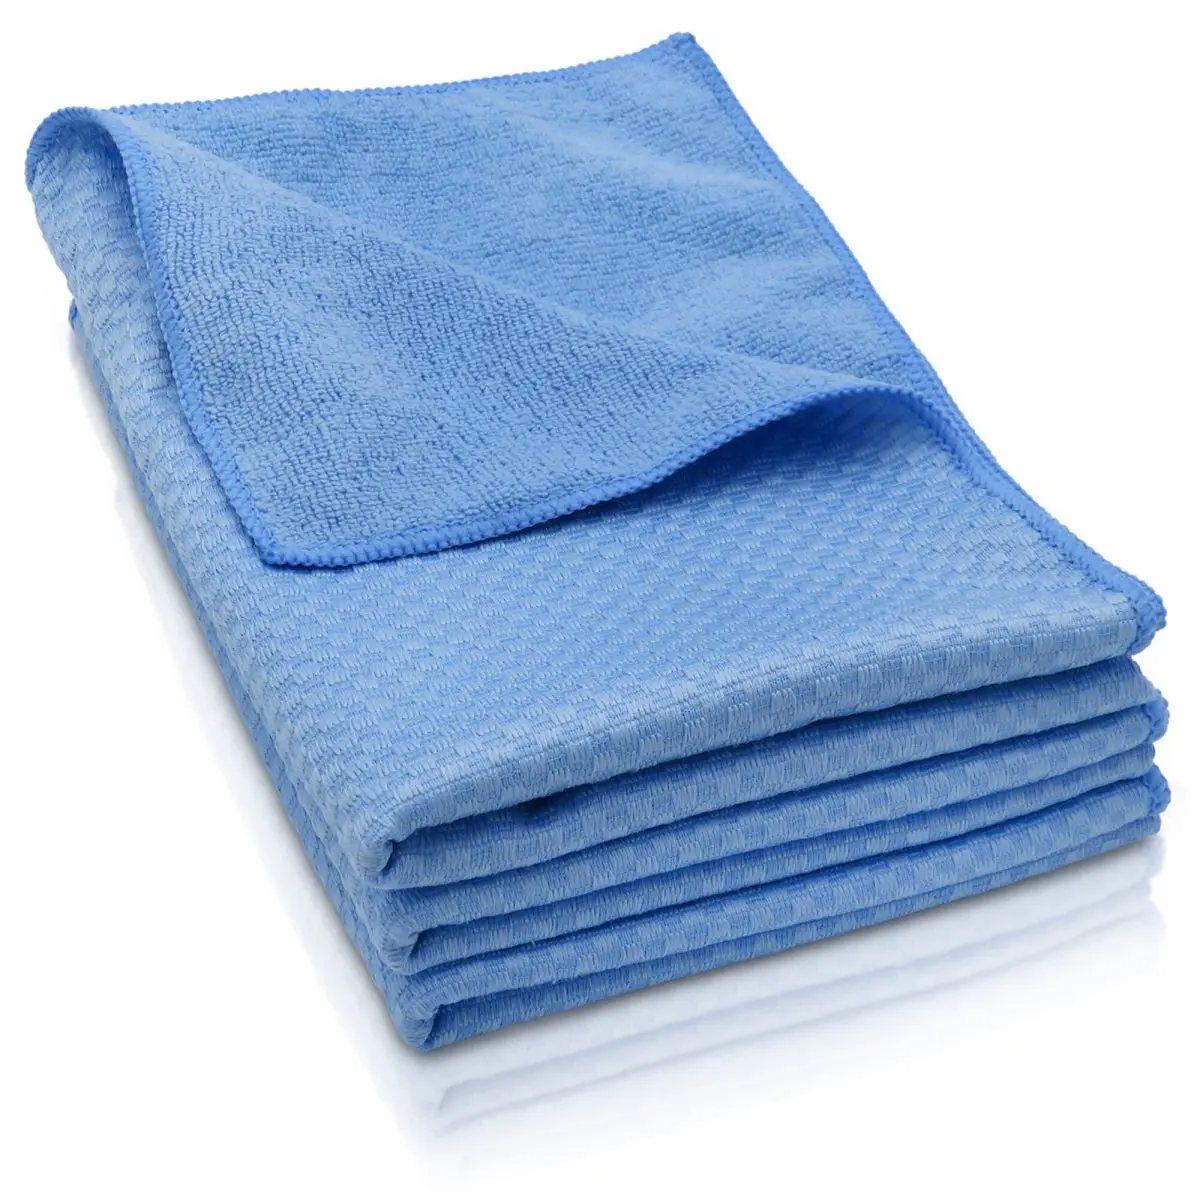 Súprava uterákov - 3 uteráky z mikrovlákna